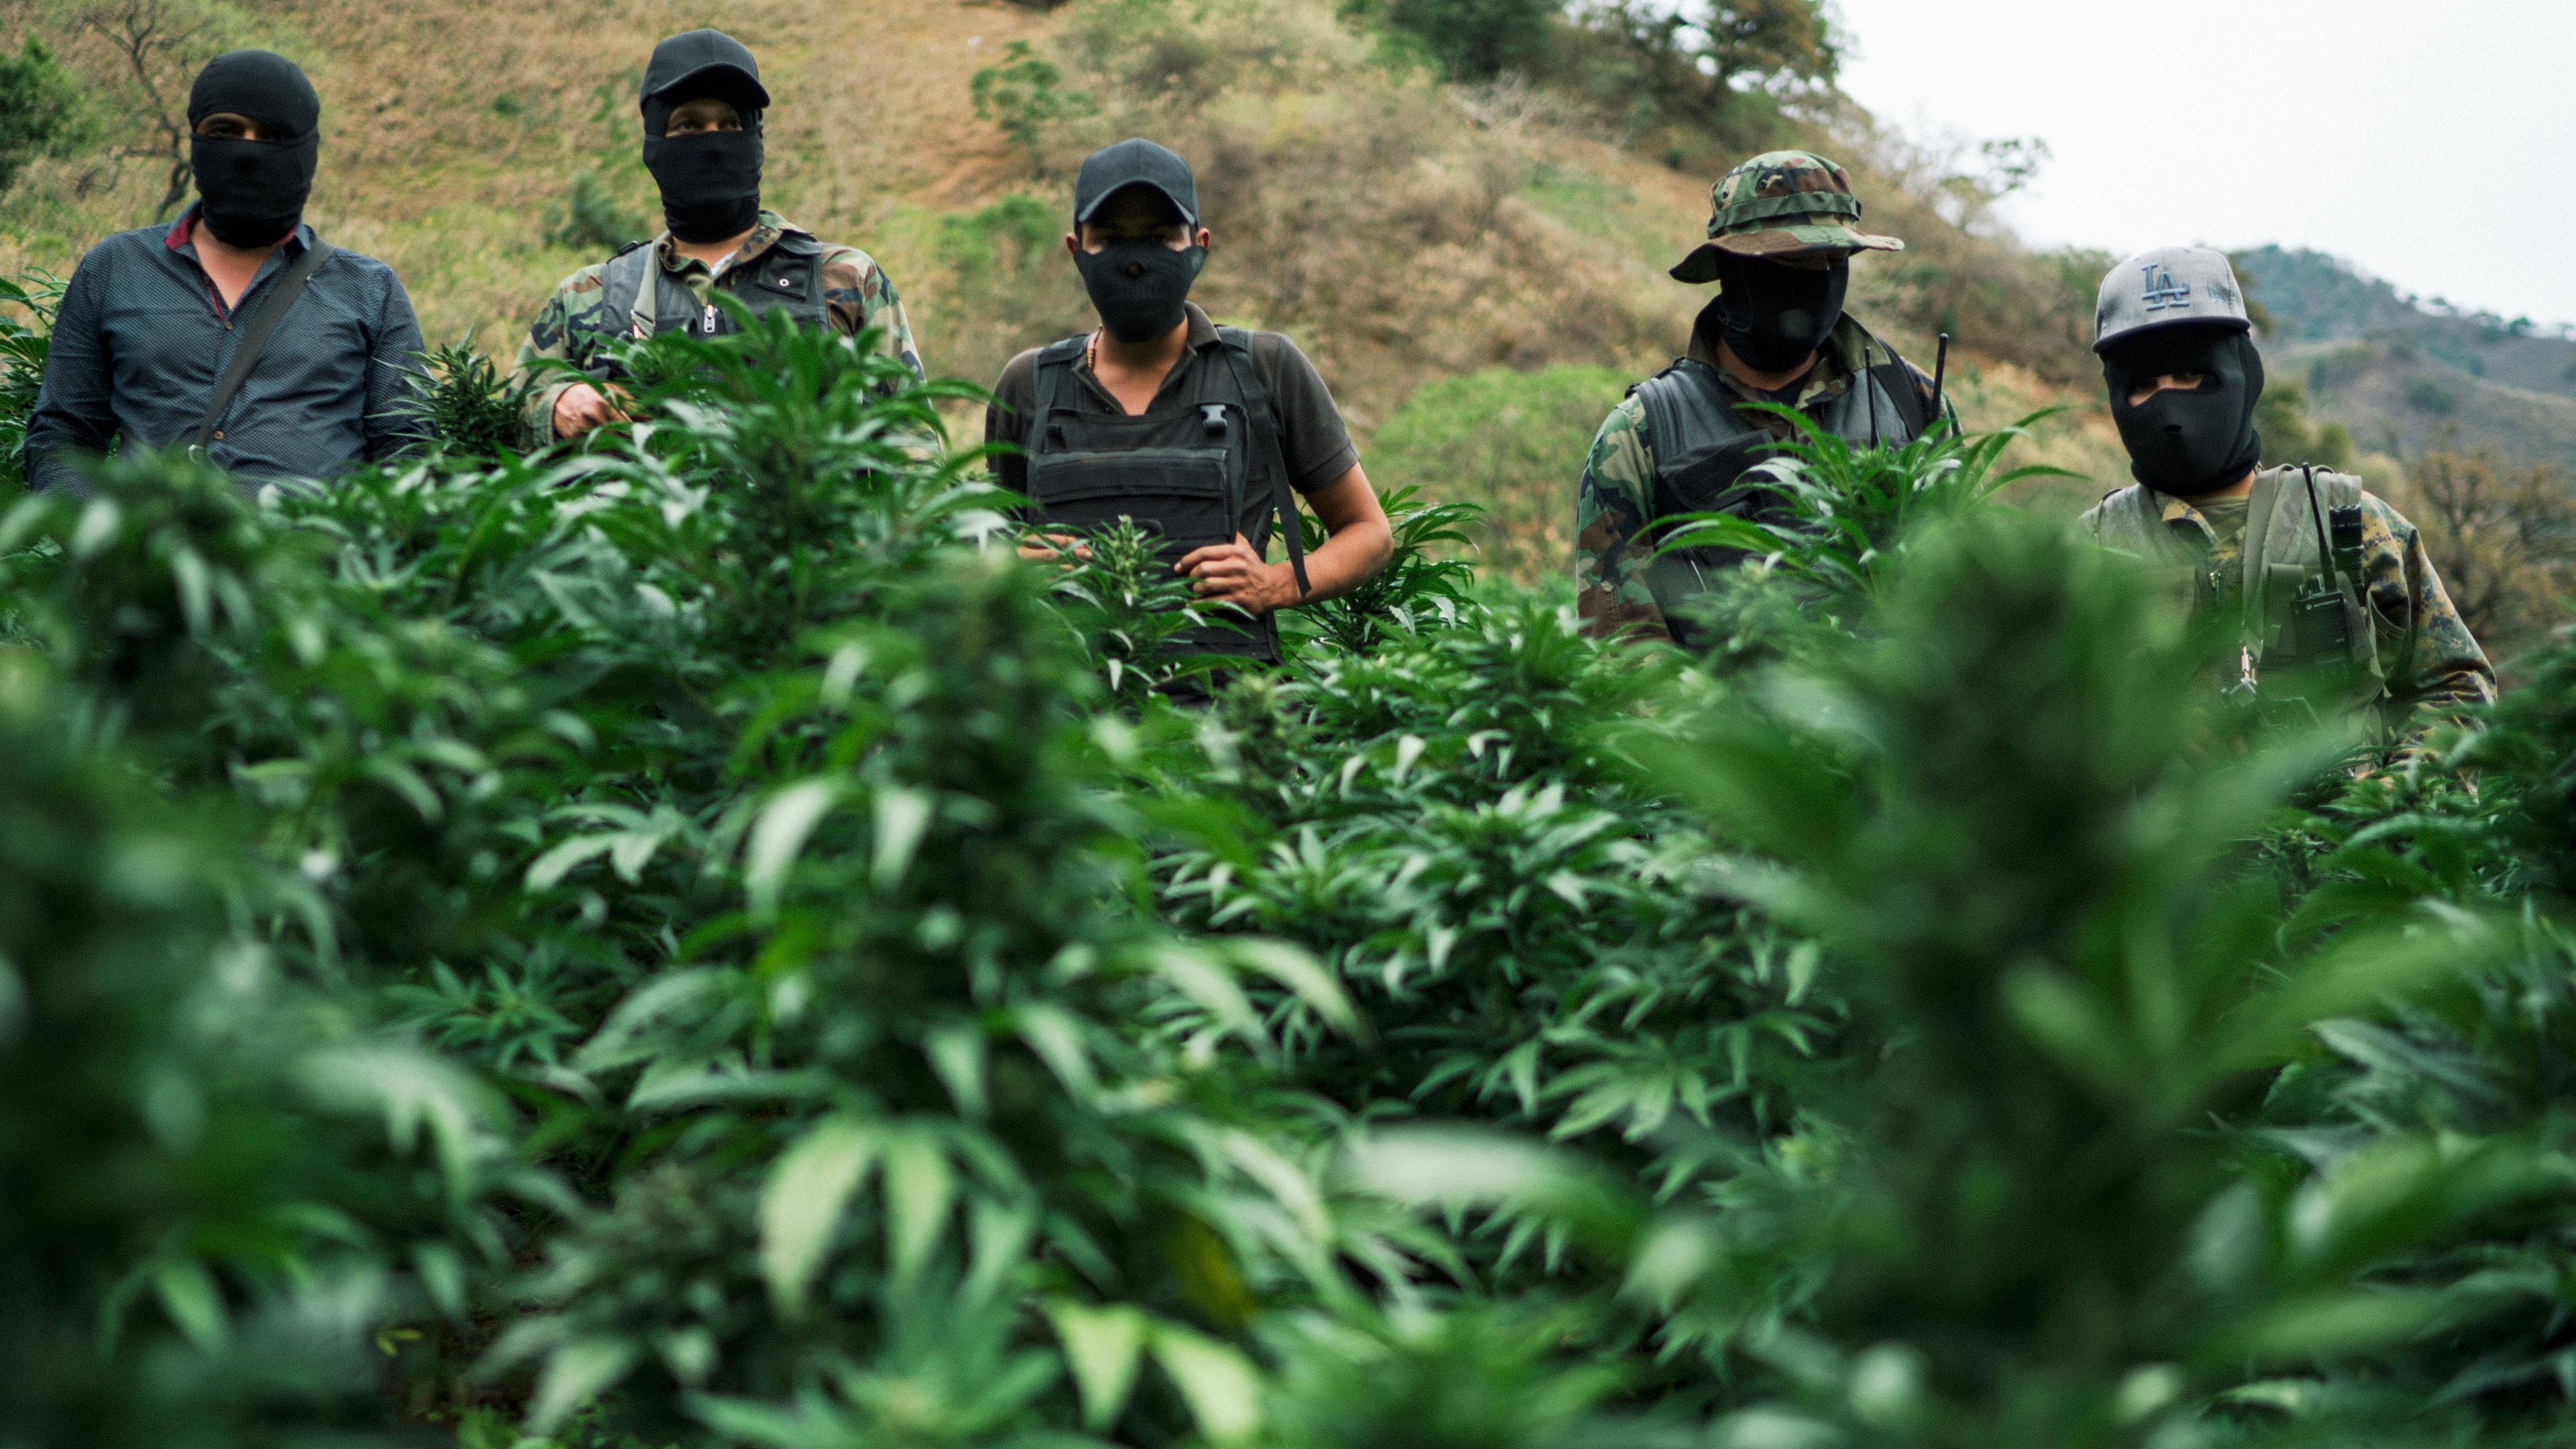 "Unter Gangstern: Das Sinaloa-Kartell - Teil 2": Vermummte und bewaffnete Kartell-Mitglieder in einer Marihuana-Plantage in den Bergen von Sinaloa.